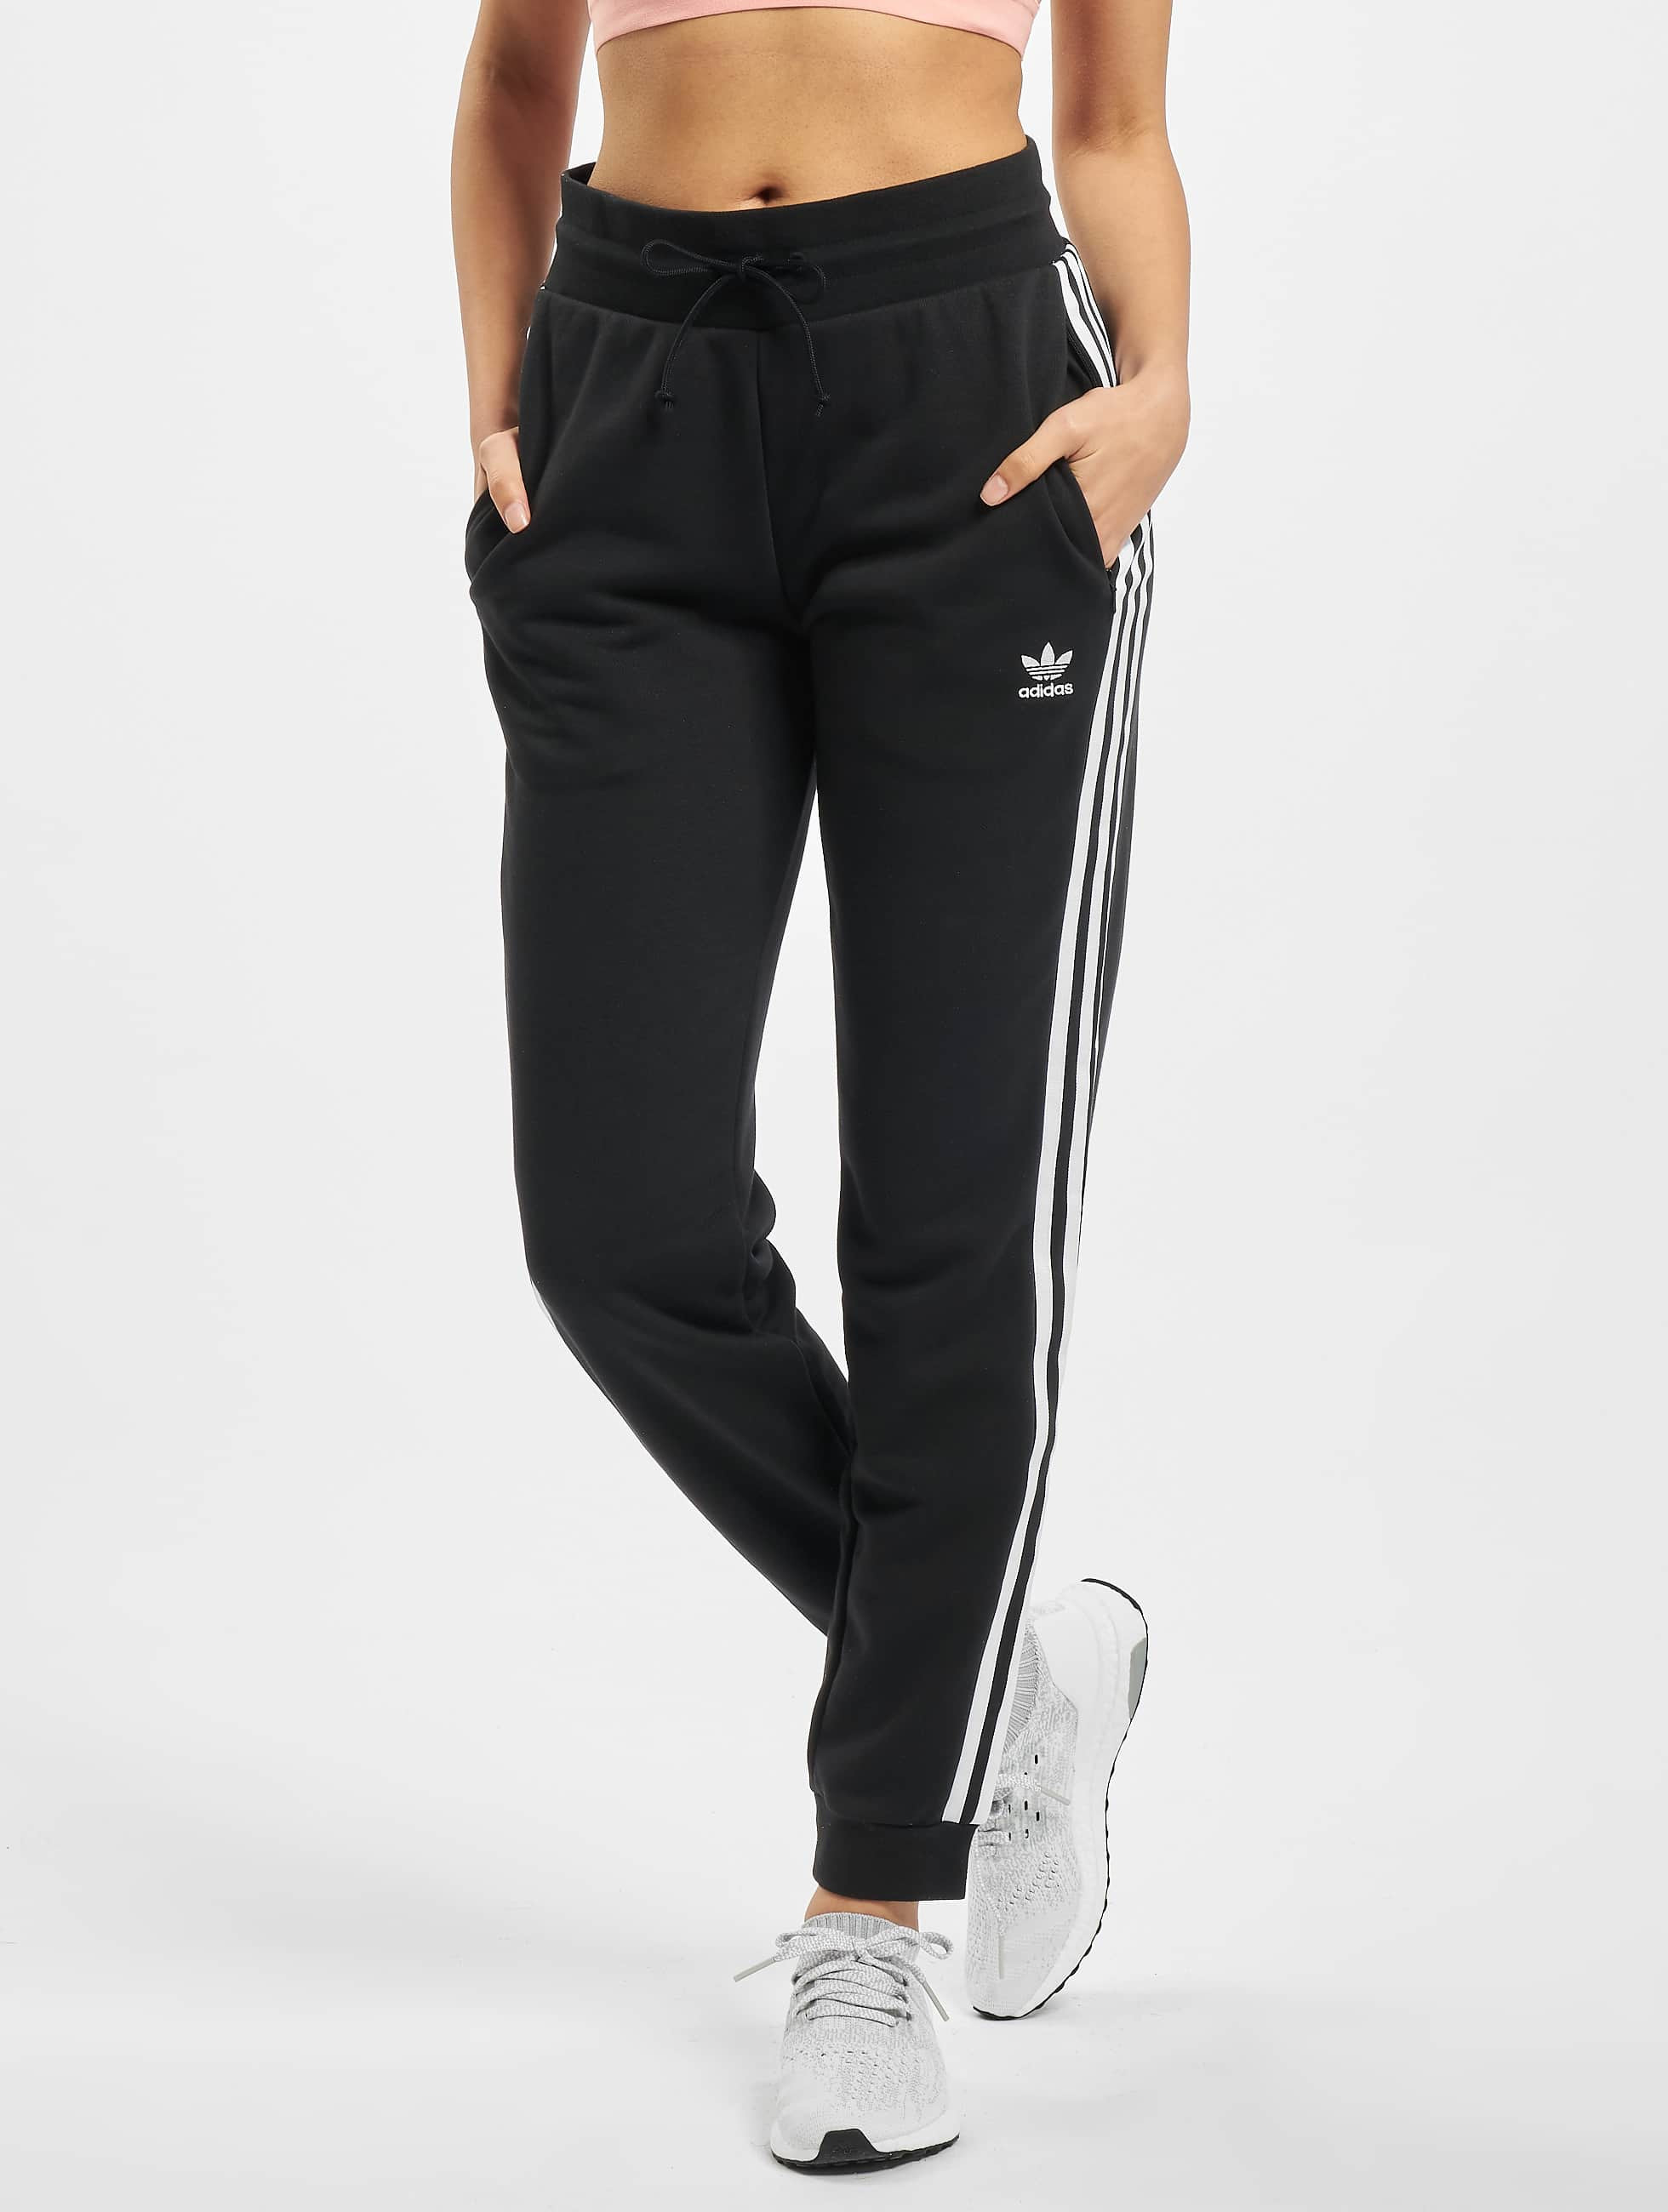 Rubriek intern gemiddelde adidas Originals broek / joggingbroek Slim in zwart 766760